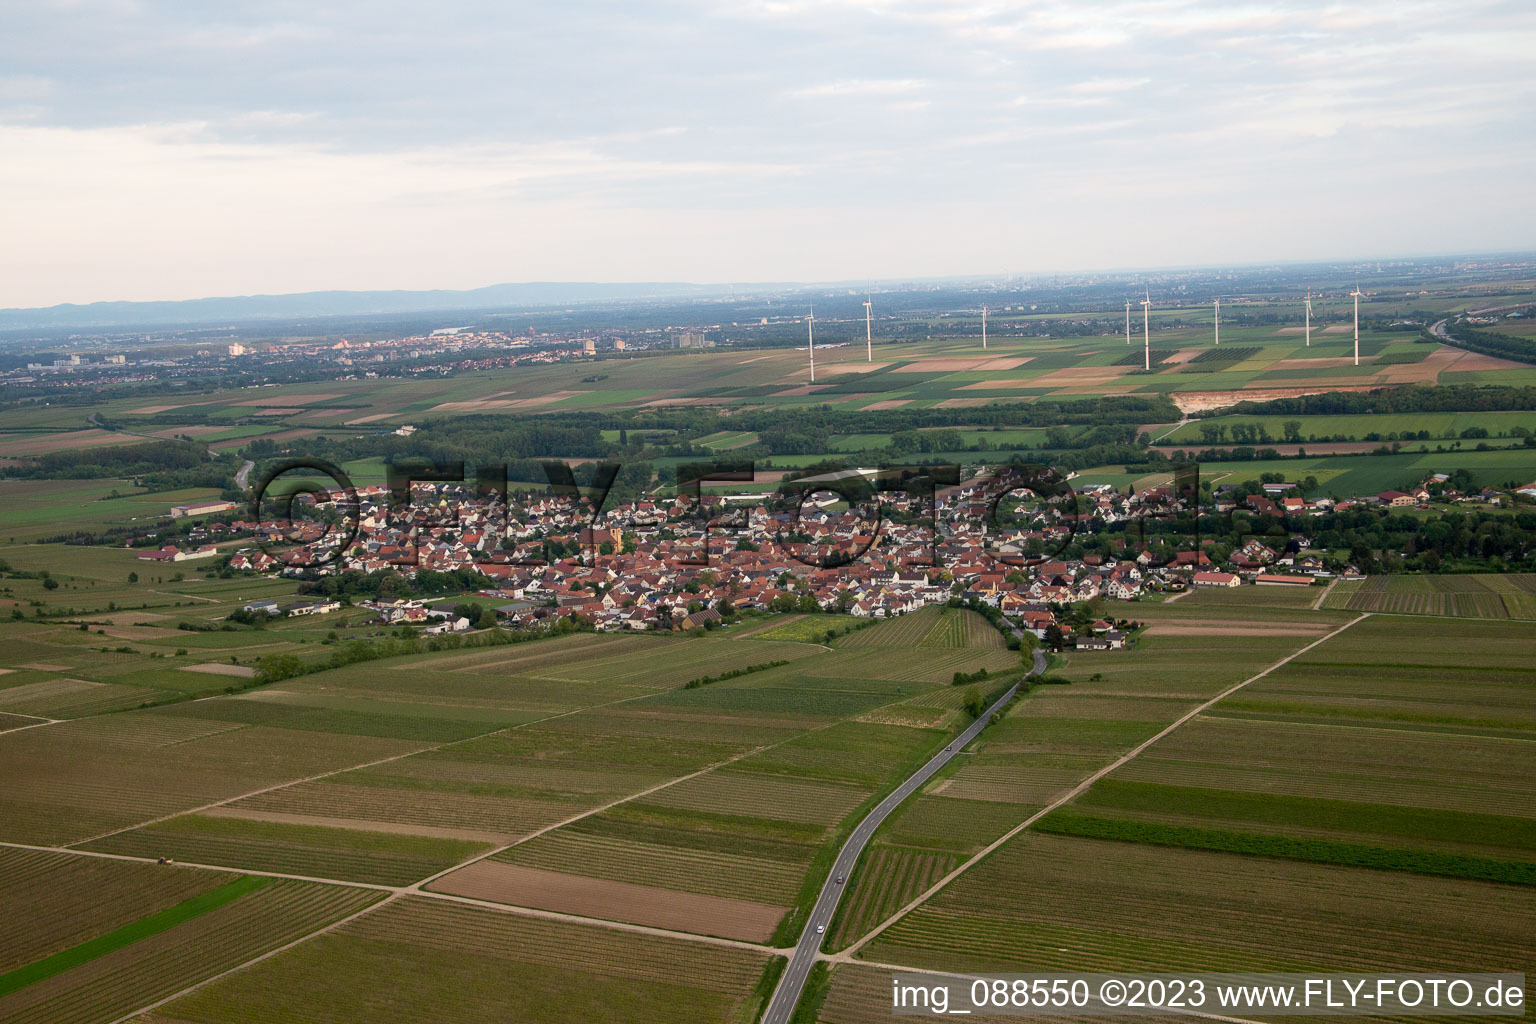 Luftbild von Ortsteil Abenheim in Worms im Bundesland Rheinland-Pfalz, Deutschland